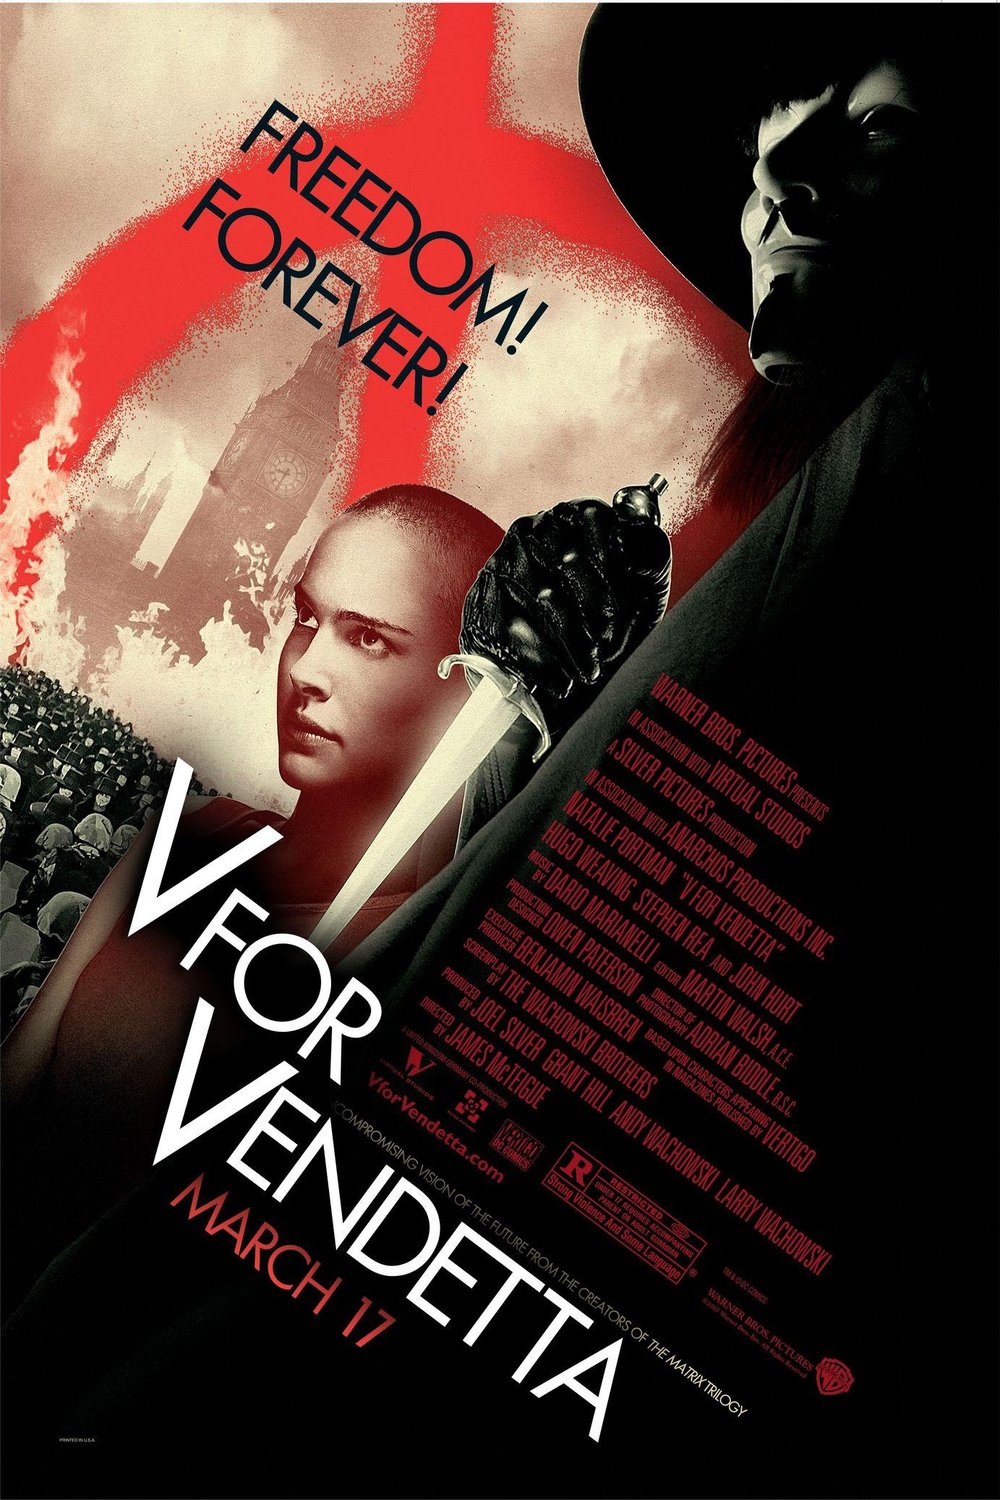 L'affiche du film V pour Vendetta v.f.